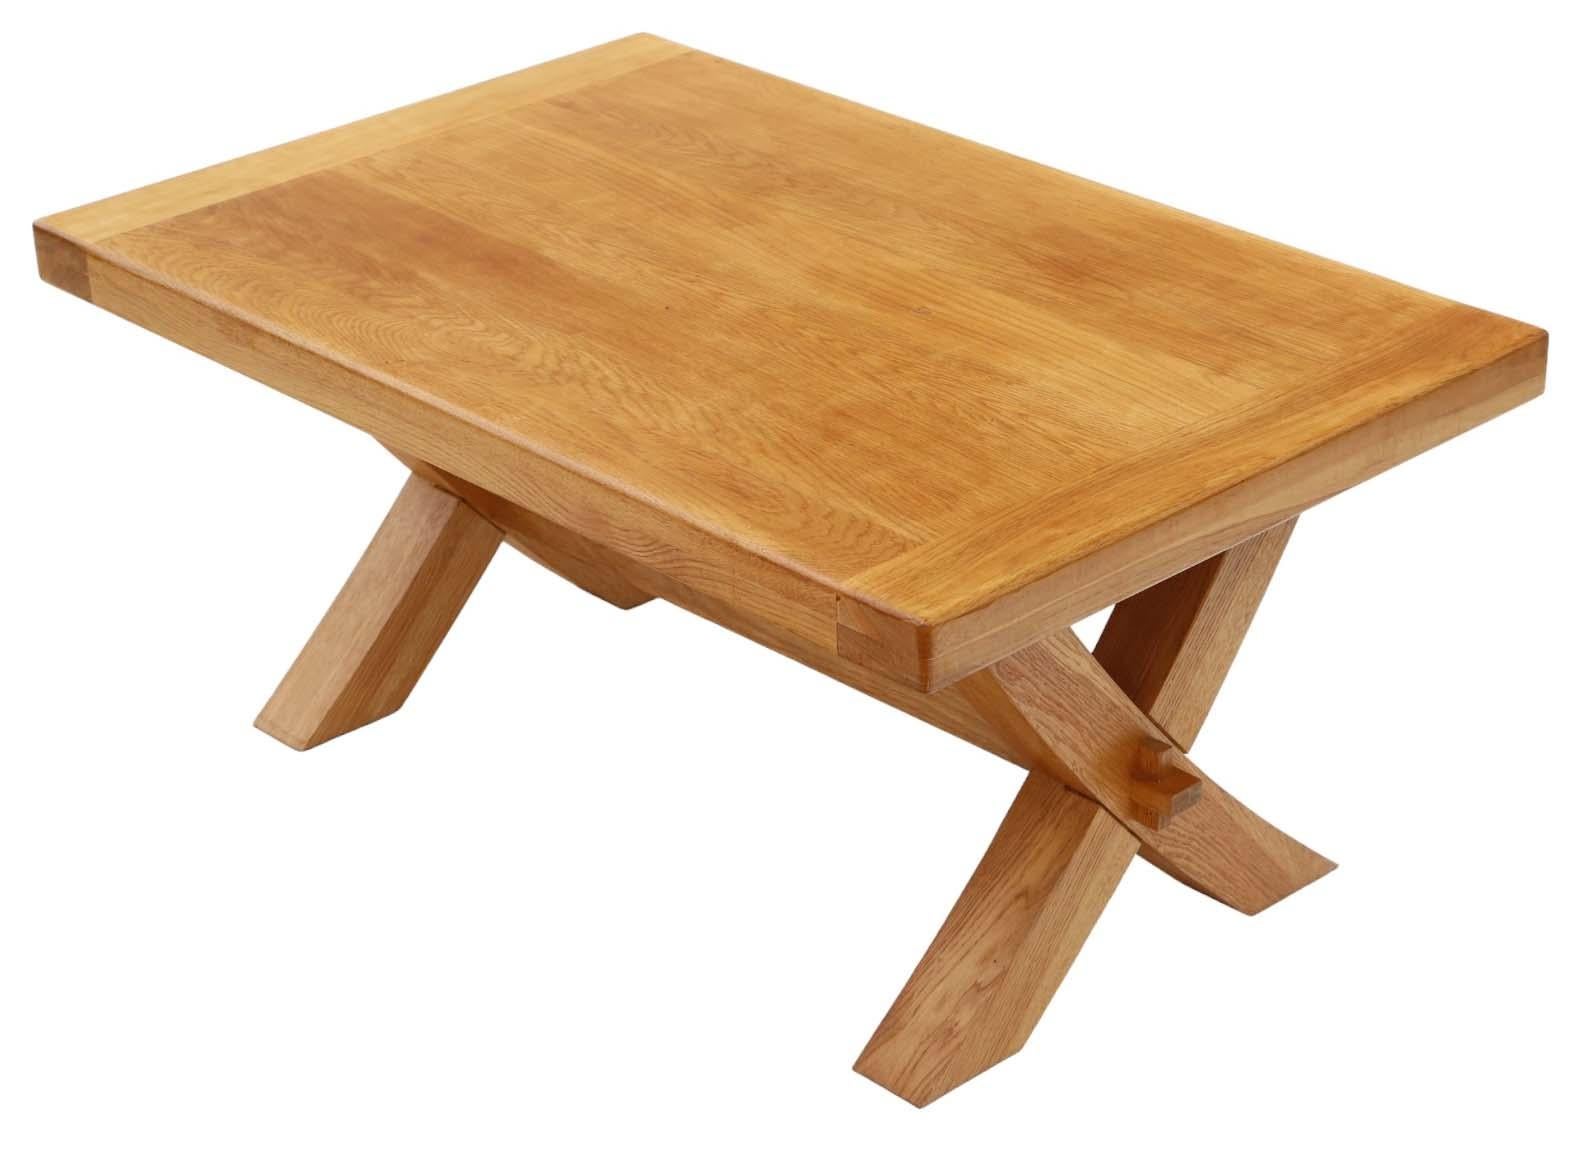 Vintage Solid Light Oak Coffee Table - Quality Occasional Side Table with X-Stretcher Base. Construit à la fin du 20e siècle.

Cette pièce bénéficie d'une construction robuste, sans joints lâches ni dégâts dus aux vers du bois, et rayonne d'un